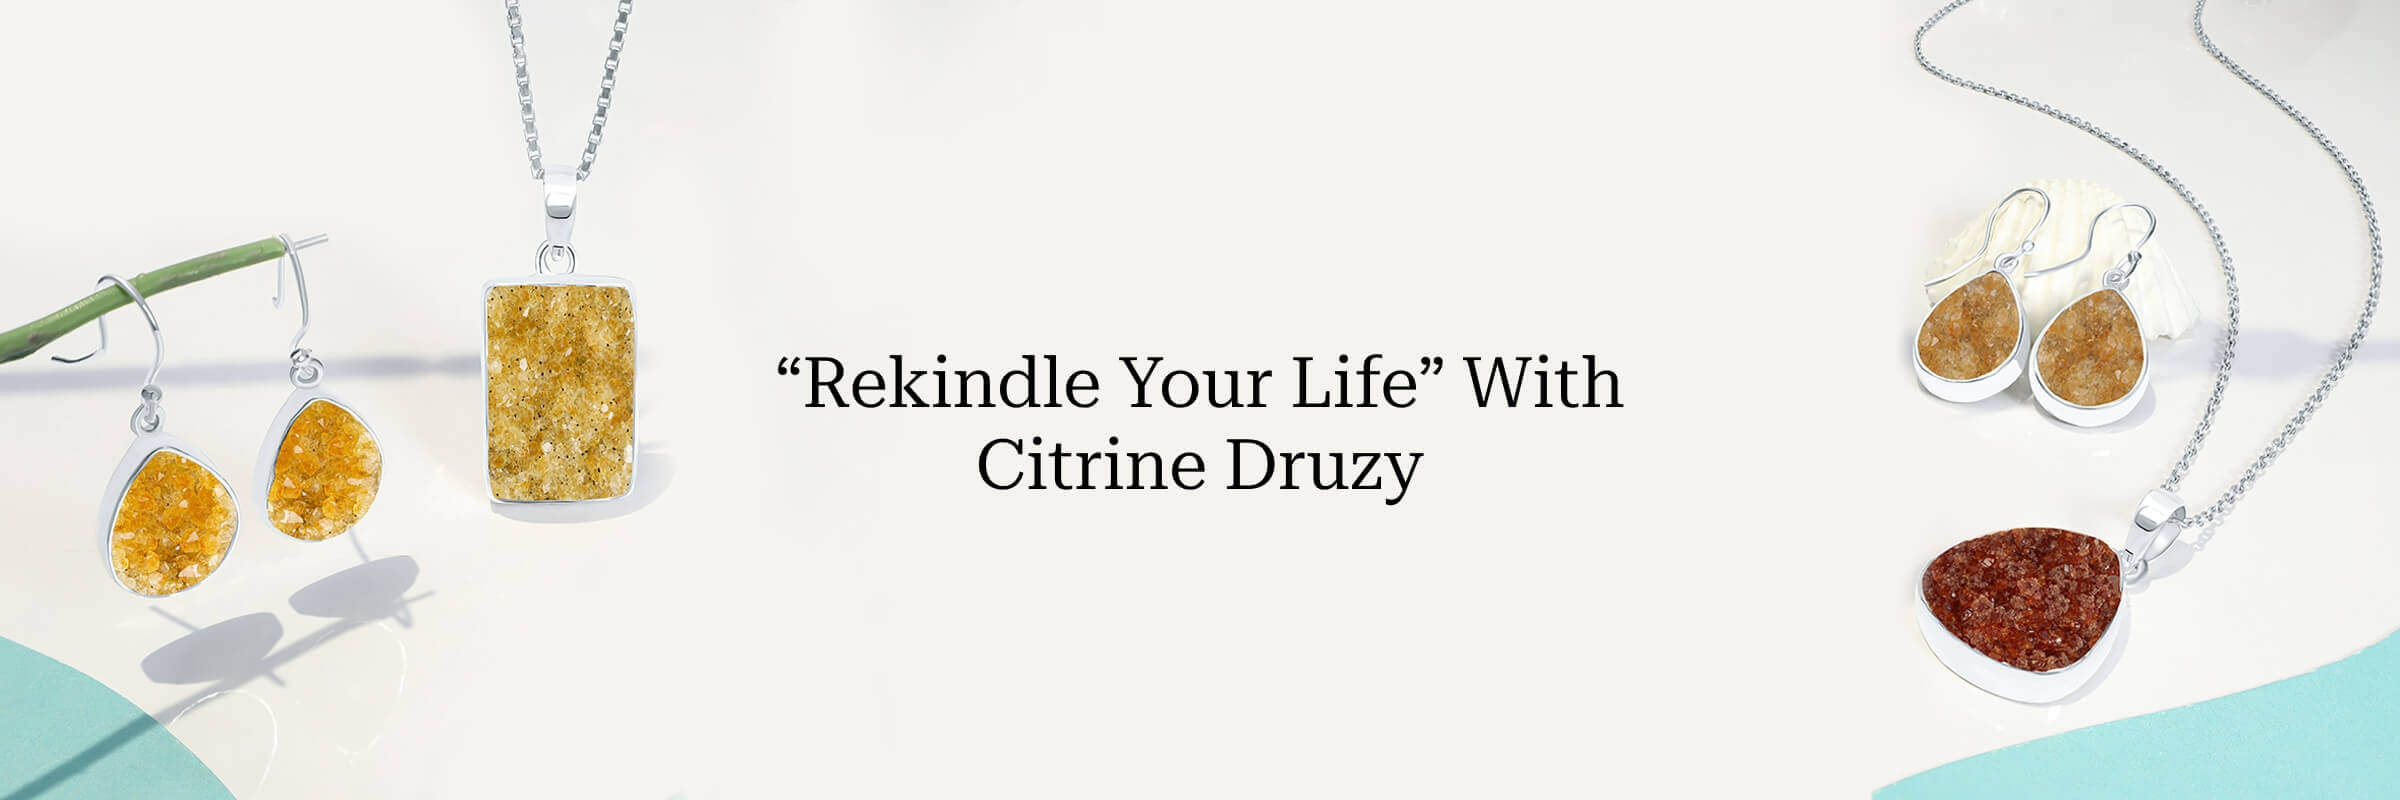 Benefits of Citrine Druzy